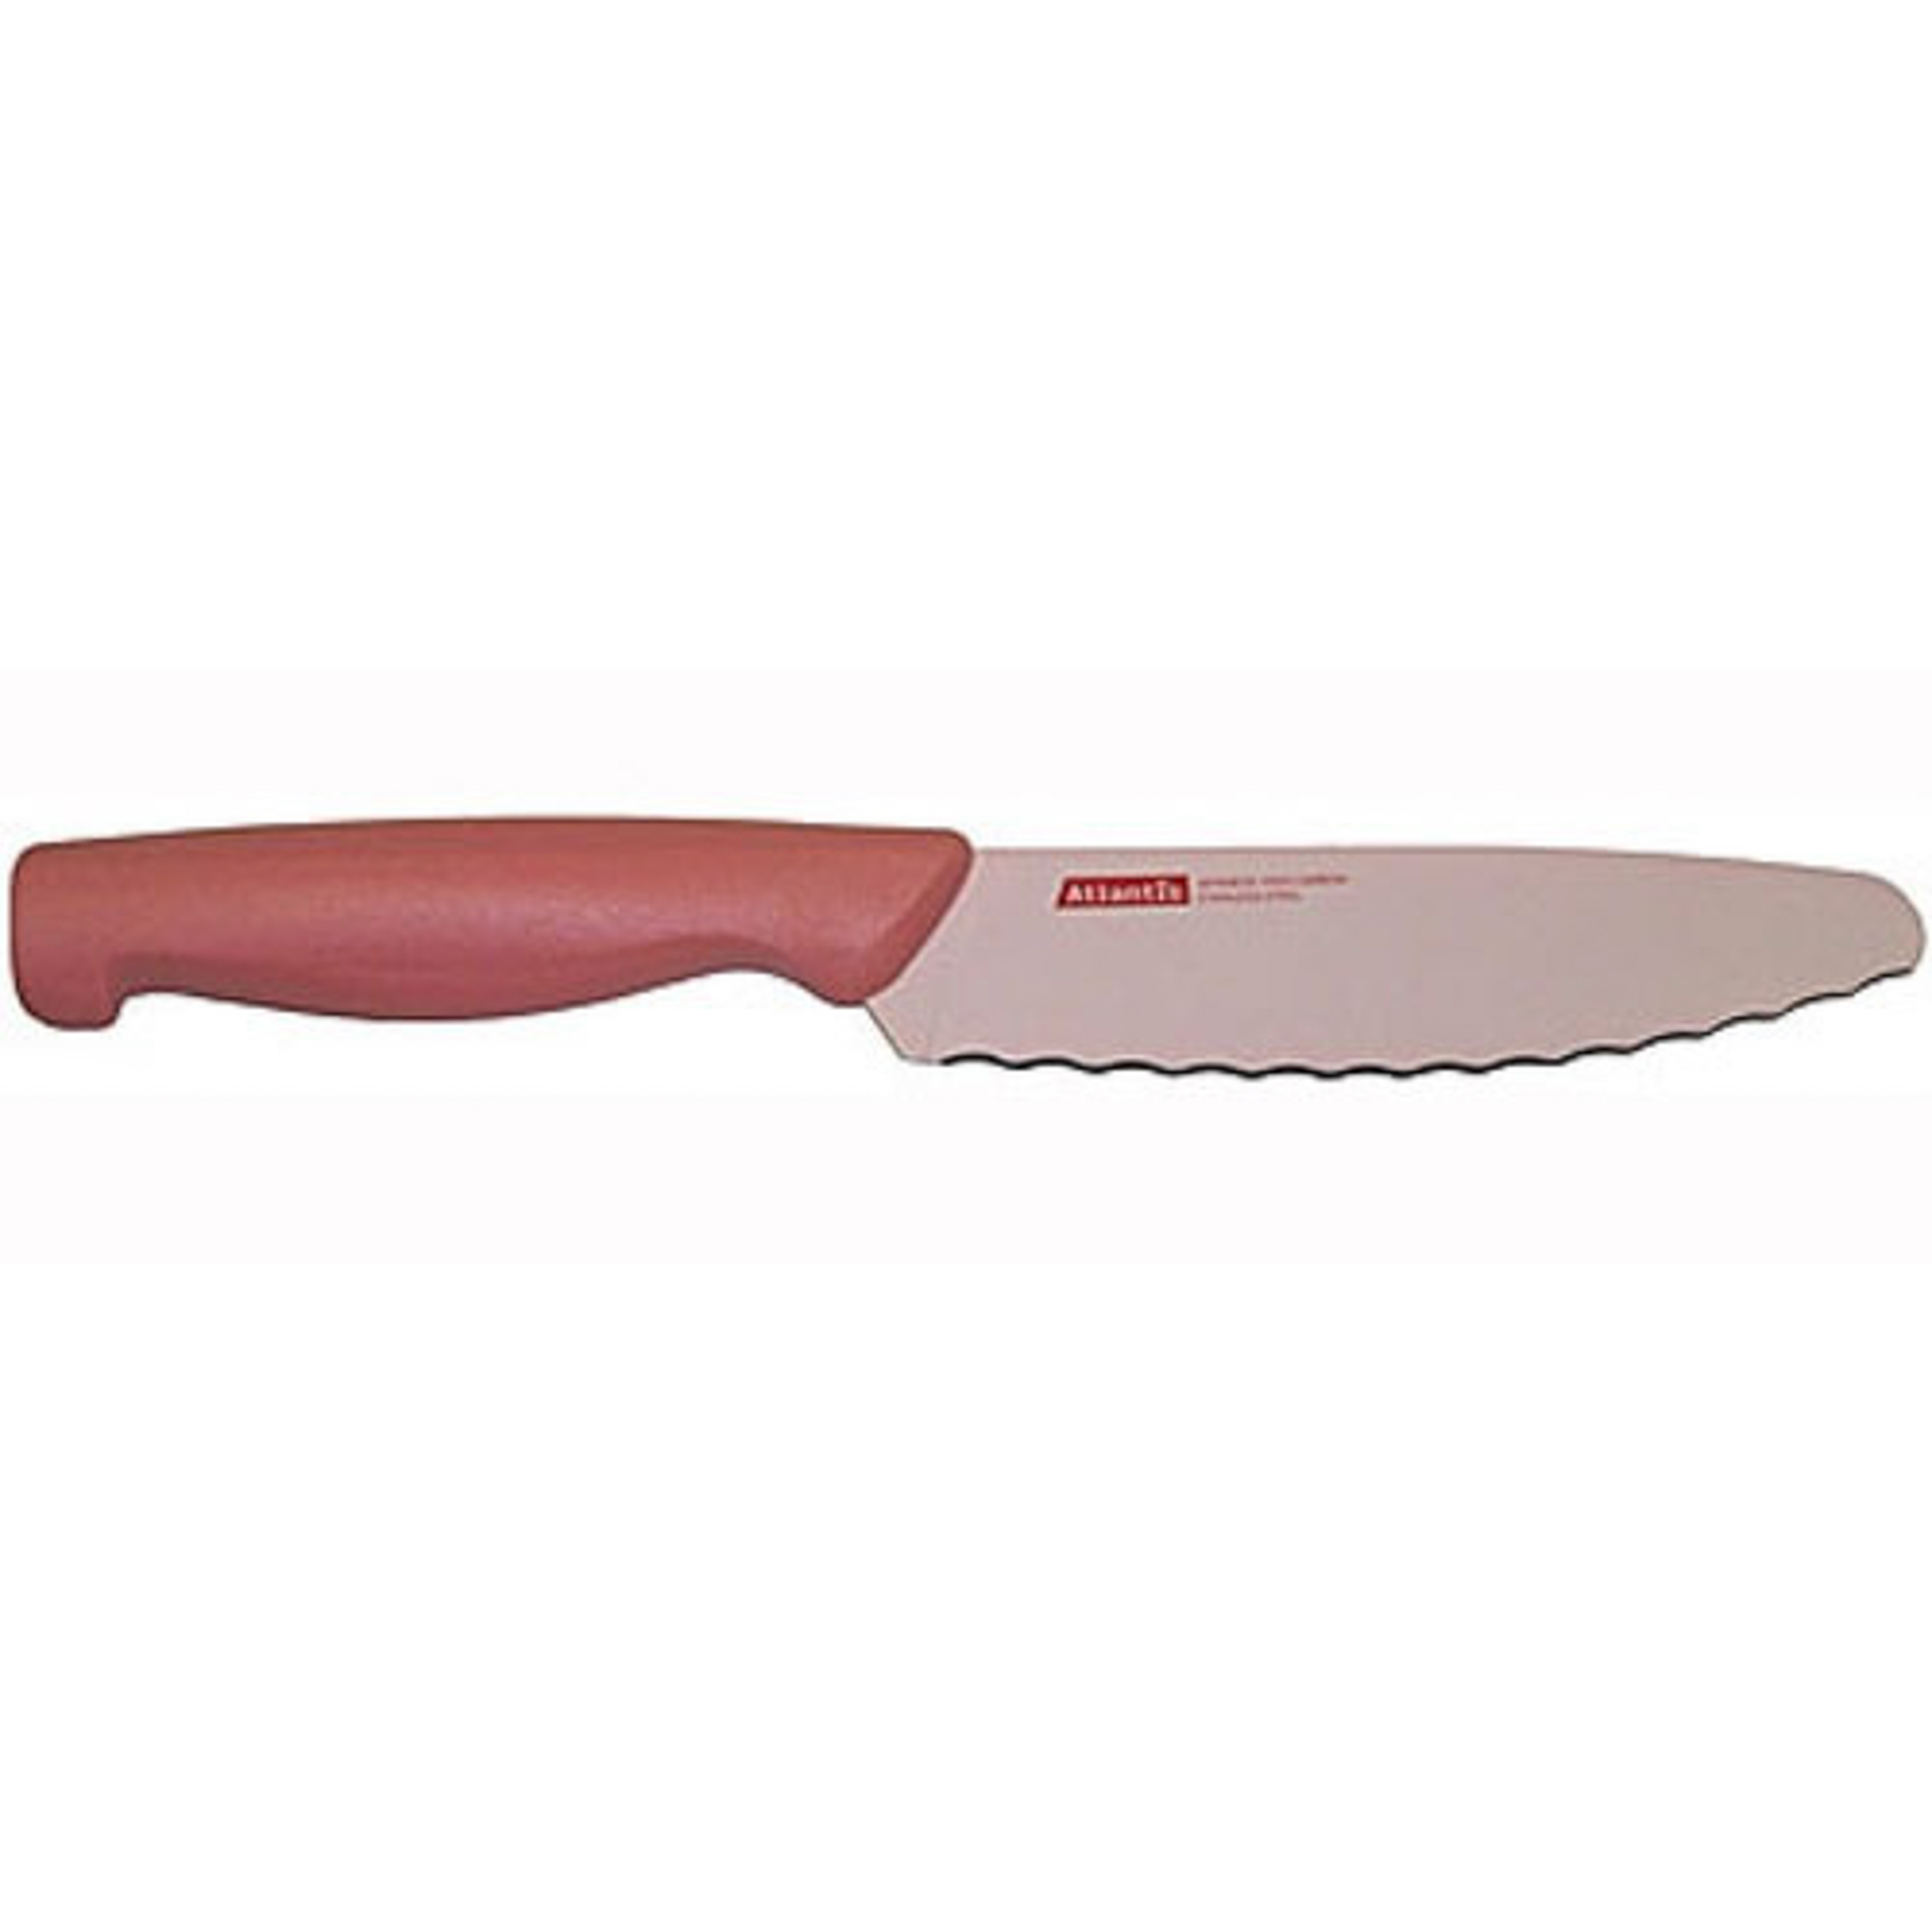 Нож универсальный 15см розовый Atlantis